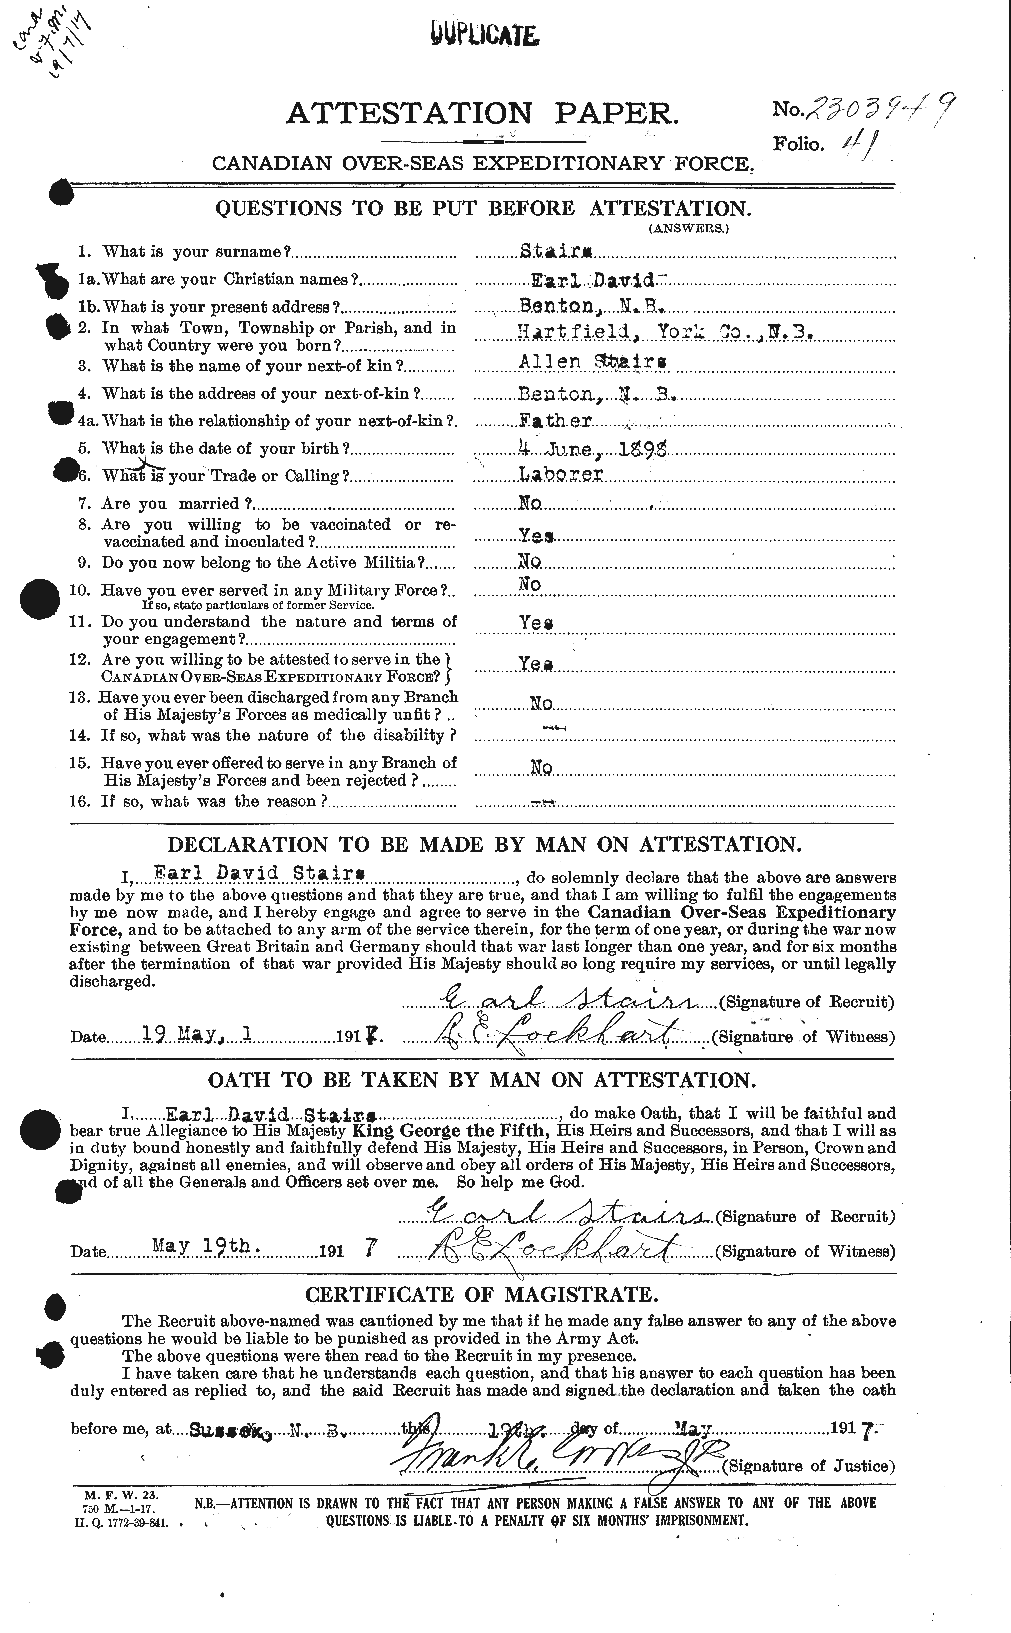 Dossiers du Personnel de la Première Guerre mondiale - CEC 116820a